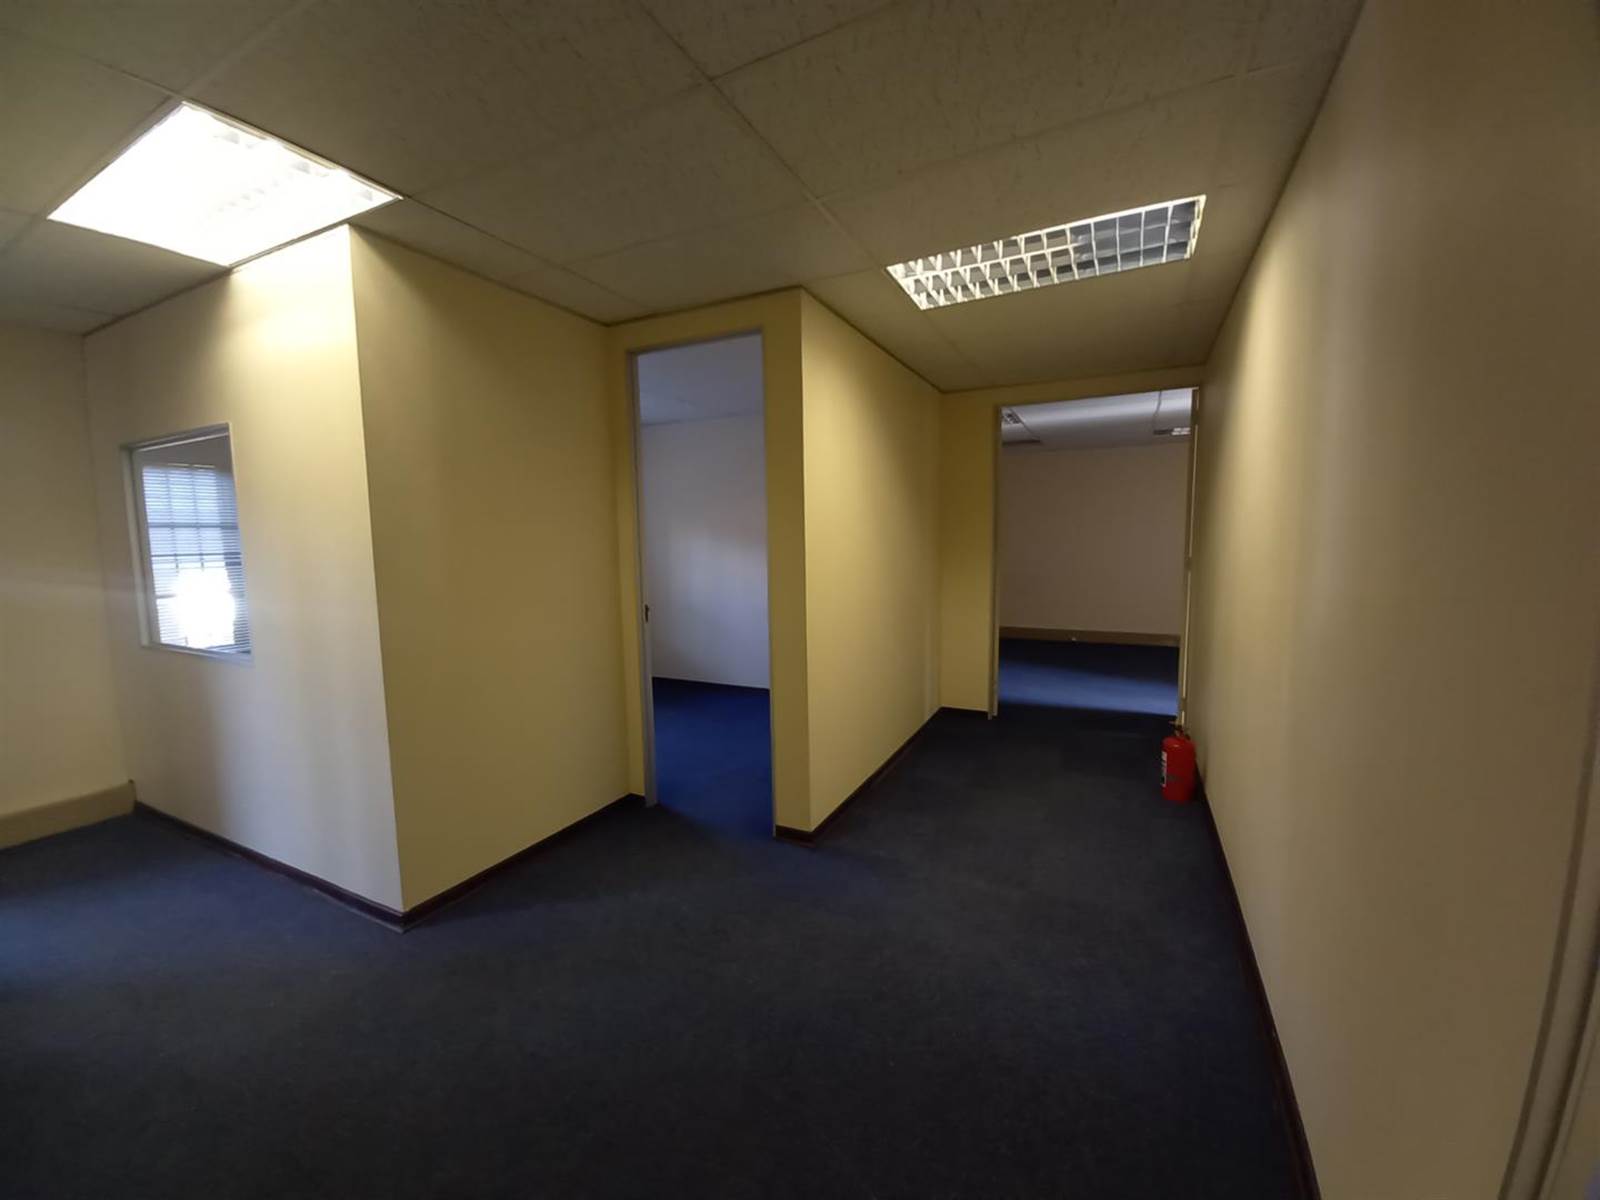 130  m² Office Space in Die Hoewes photo number 7